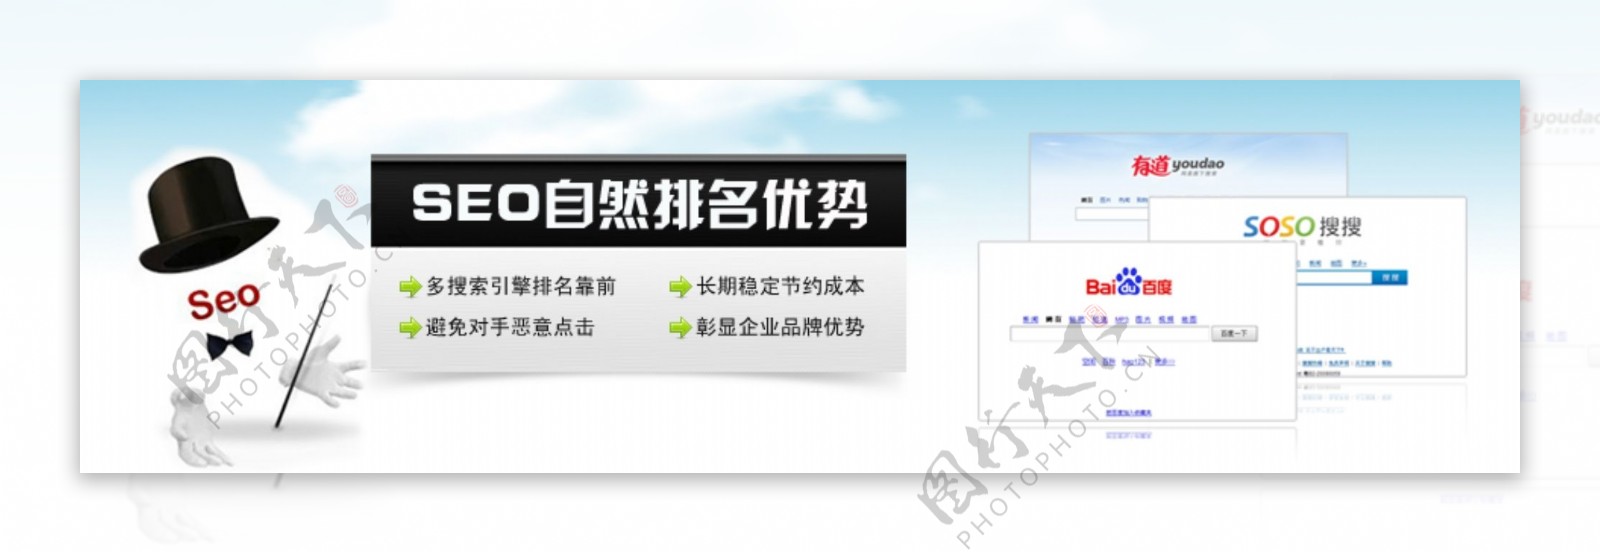 seo自然排名优势网页广告图片